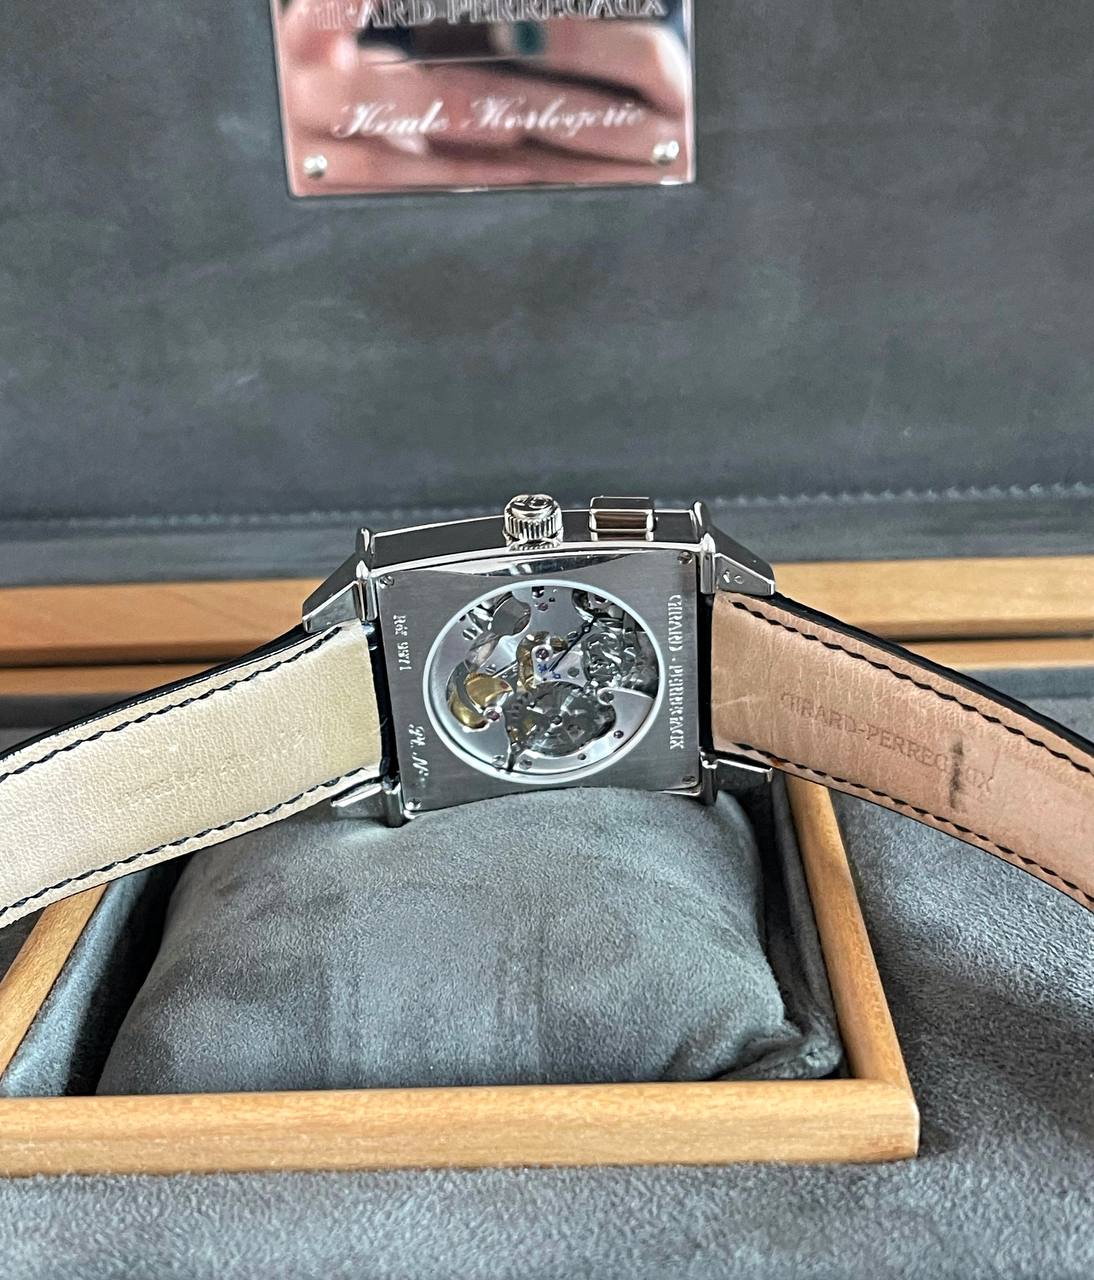 Часы Girard-Perregaux Haute Horlogerie Vintage 1945 Tourbillon Magistral 99710-71-131-BA6A